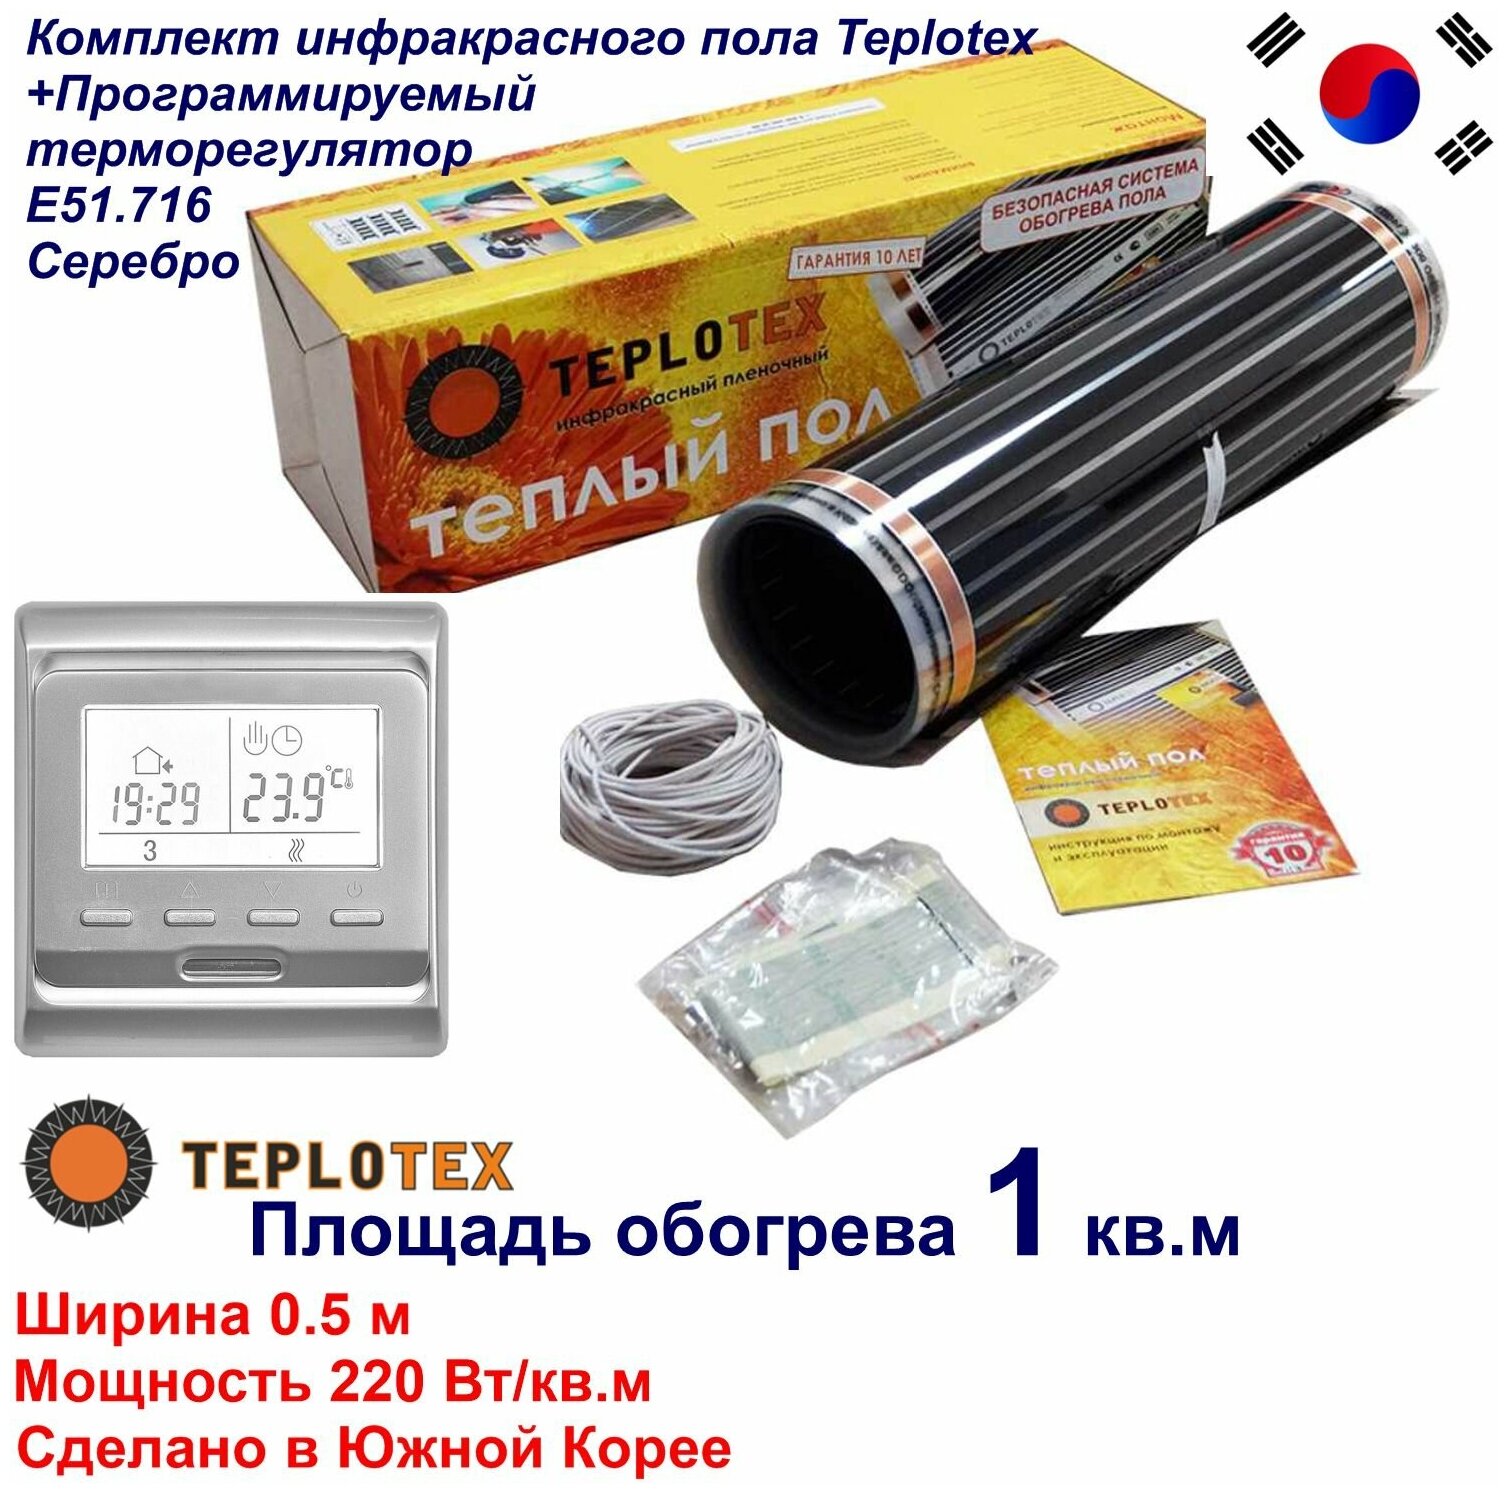 Комплект тёплого пола: Инфракрасный плёночный пол TEPLOTEX 1 кв. м/220 Вт+Монтажный комплект+Программируемый терморегулятор Е51 серебро - фотография № 1